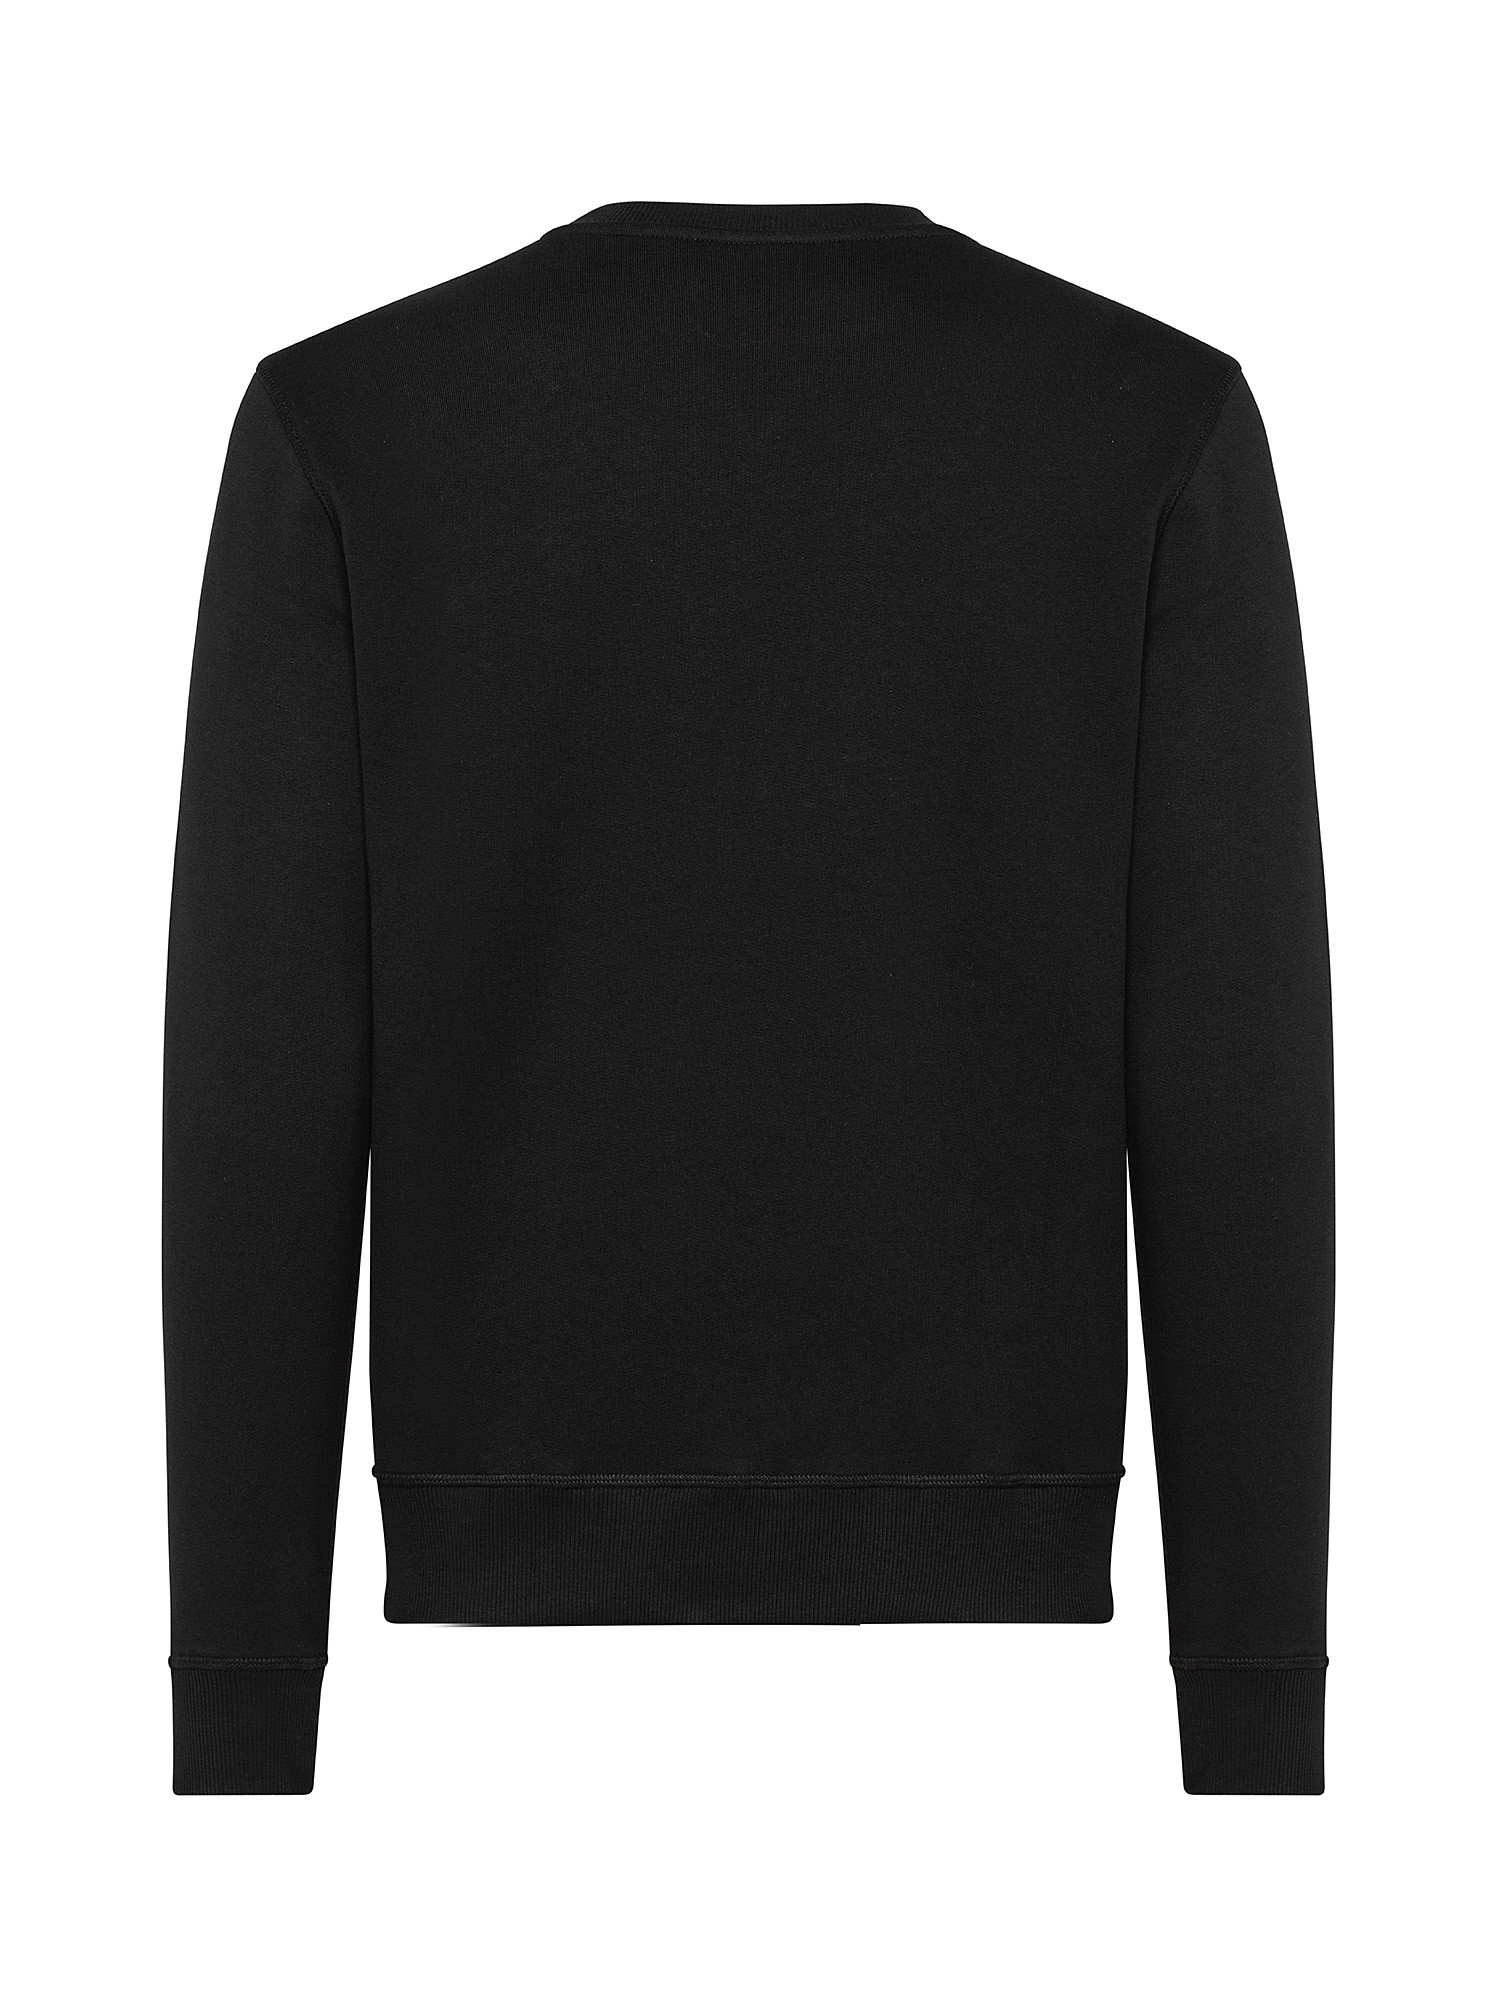 Organic cotton sweatshirt, Black, large image number 1